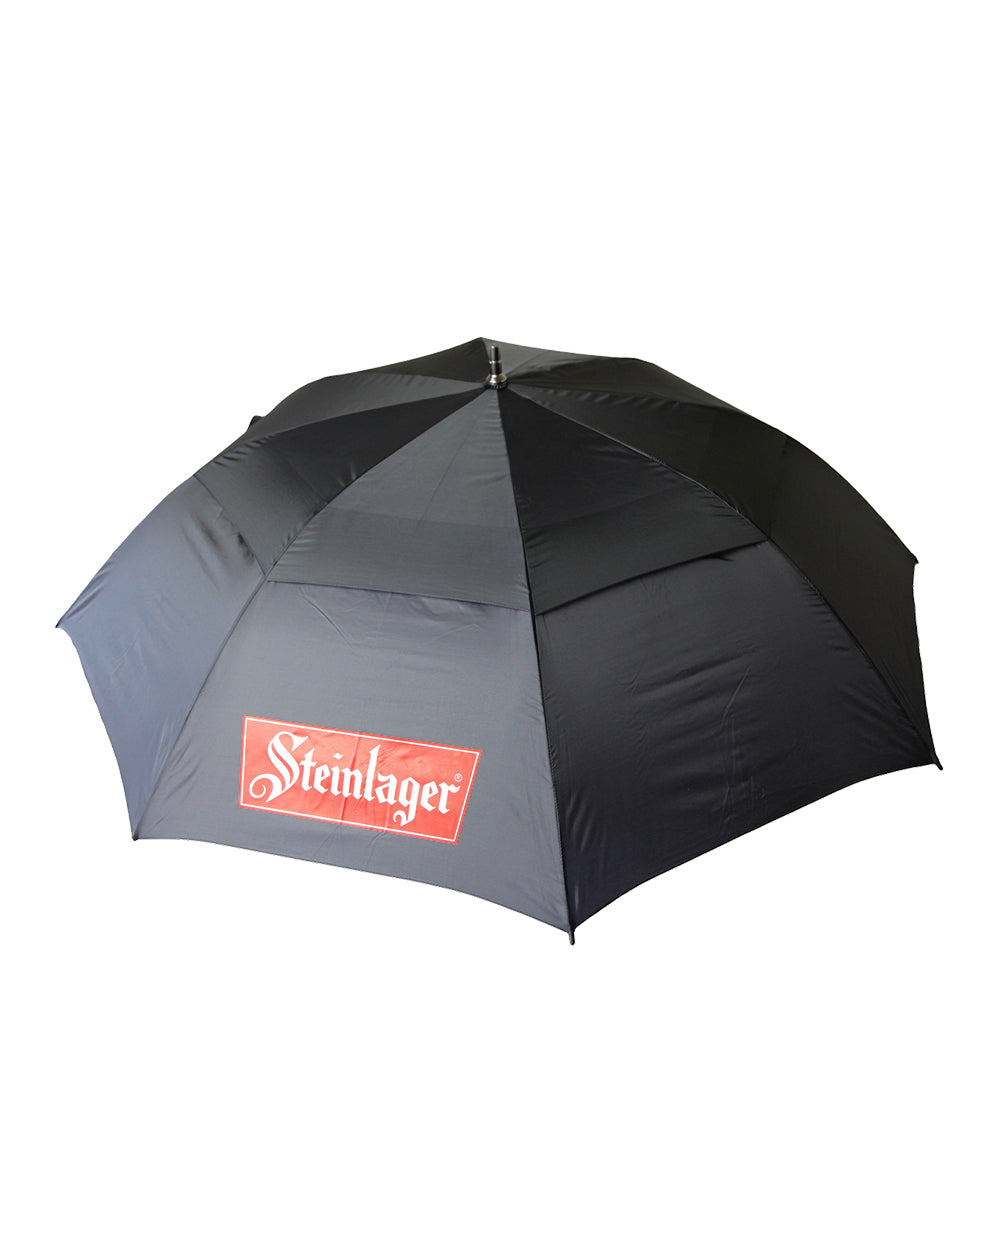 Steinlager Umbrella -  Beer Gear Apparel & Merchandise - Speights - Lion Red - VB - Tokyo Dy merch